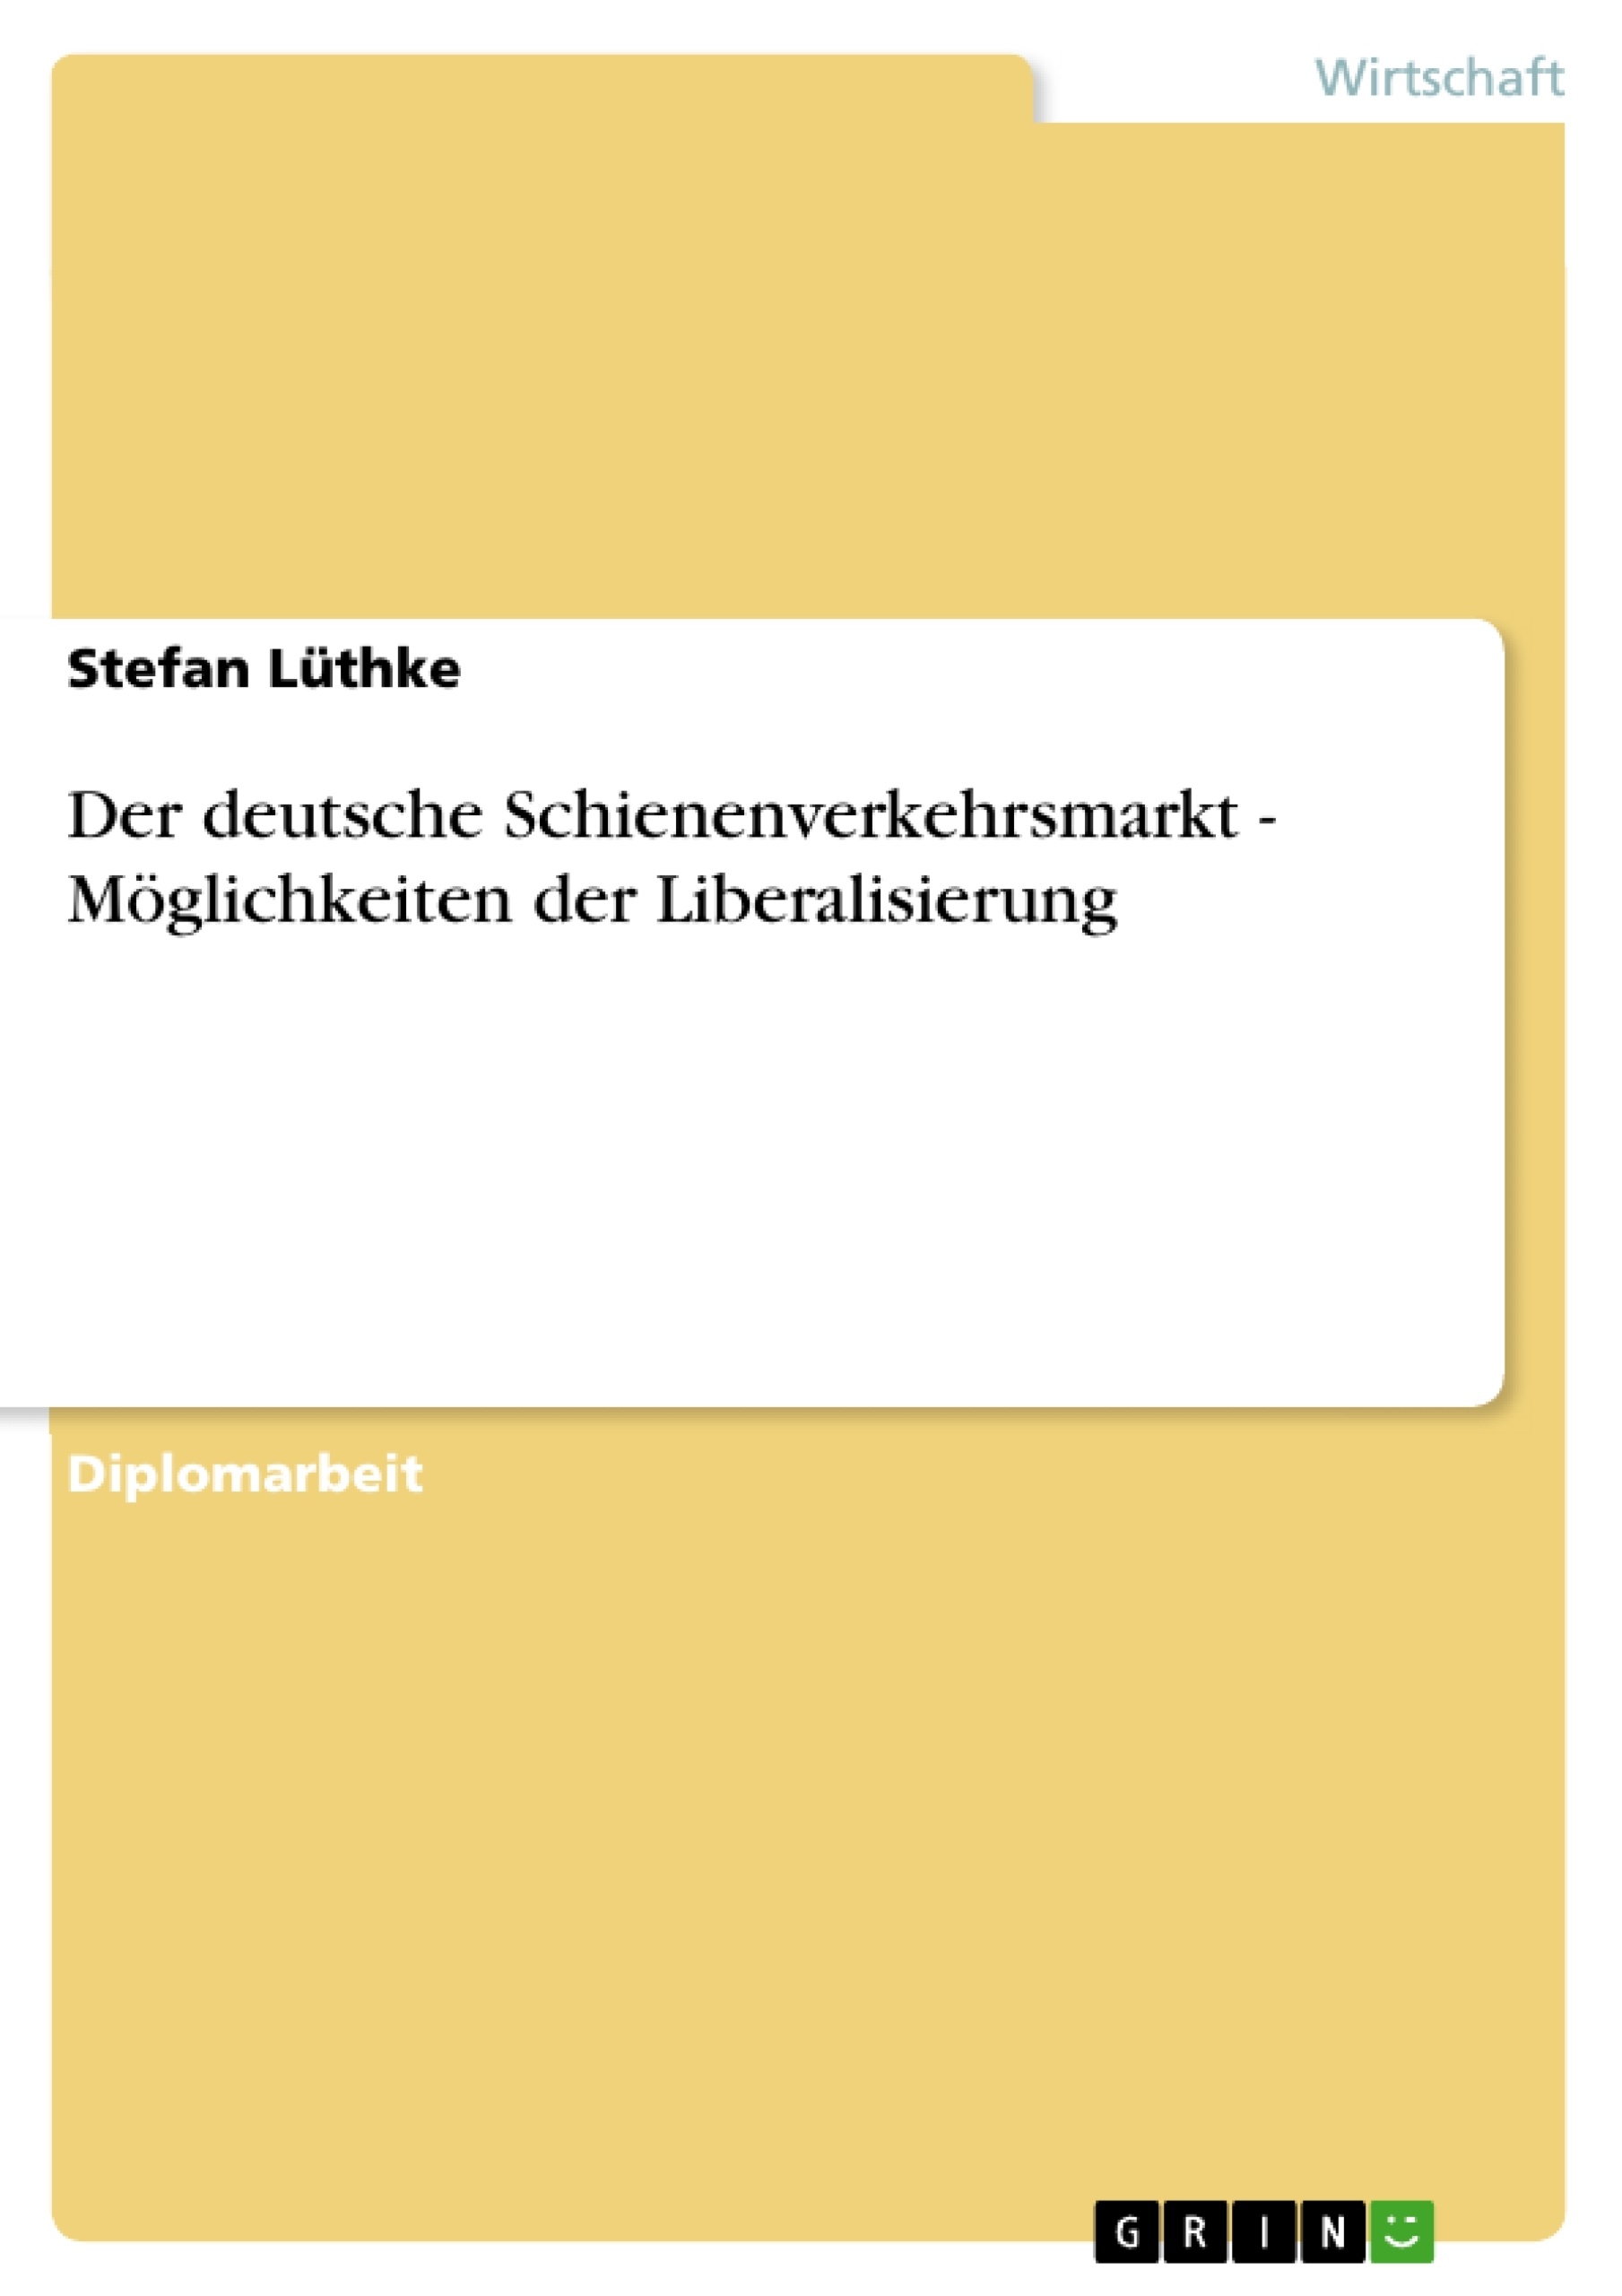 Title: Der deutsche Schienenverkehrsmarkt - Möglichkeiten der Liberalisierung